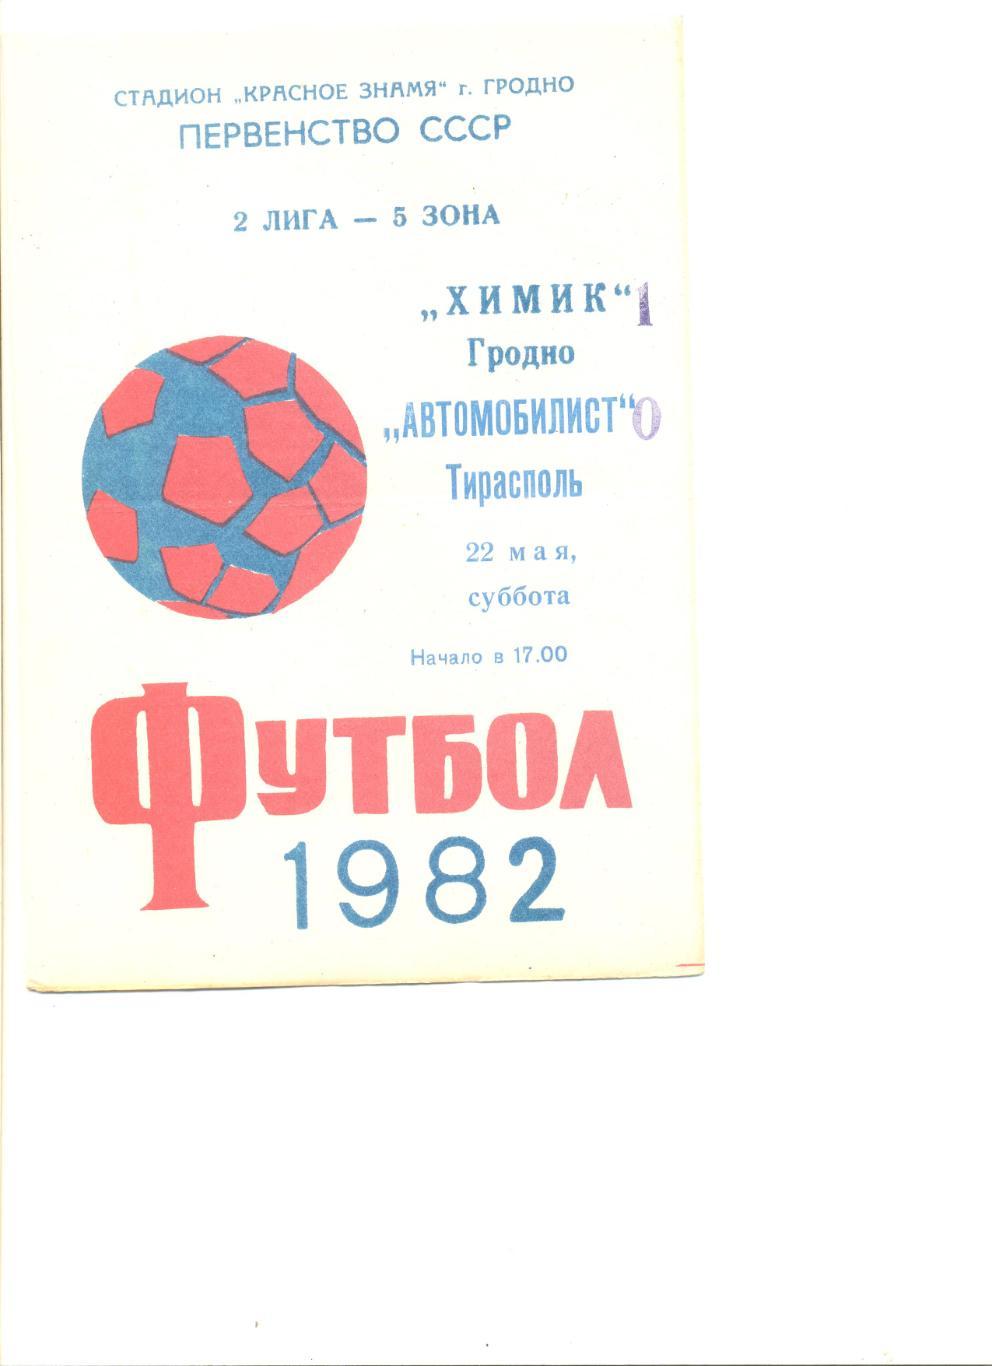 Химик Гродно - Автомобилист Тирасполь 22.05.1982 г.